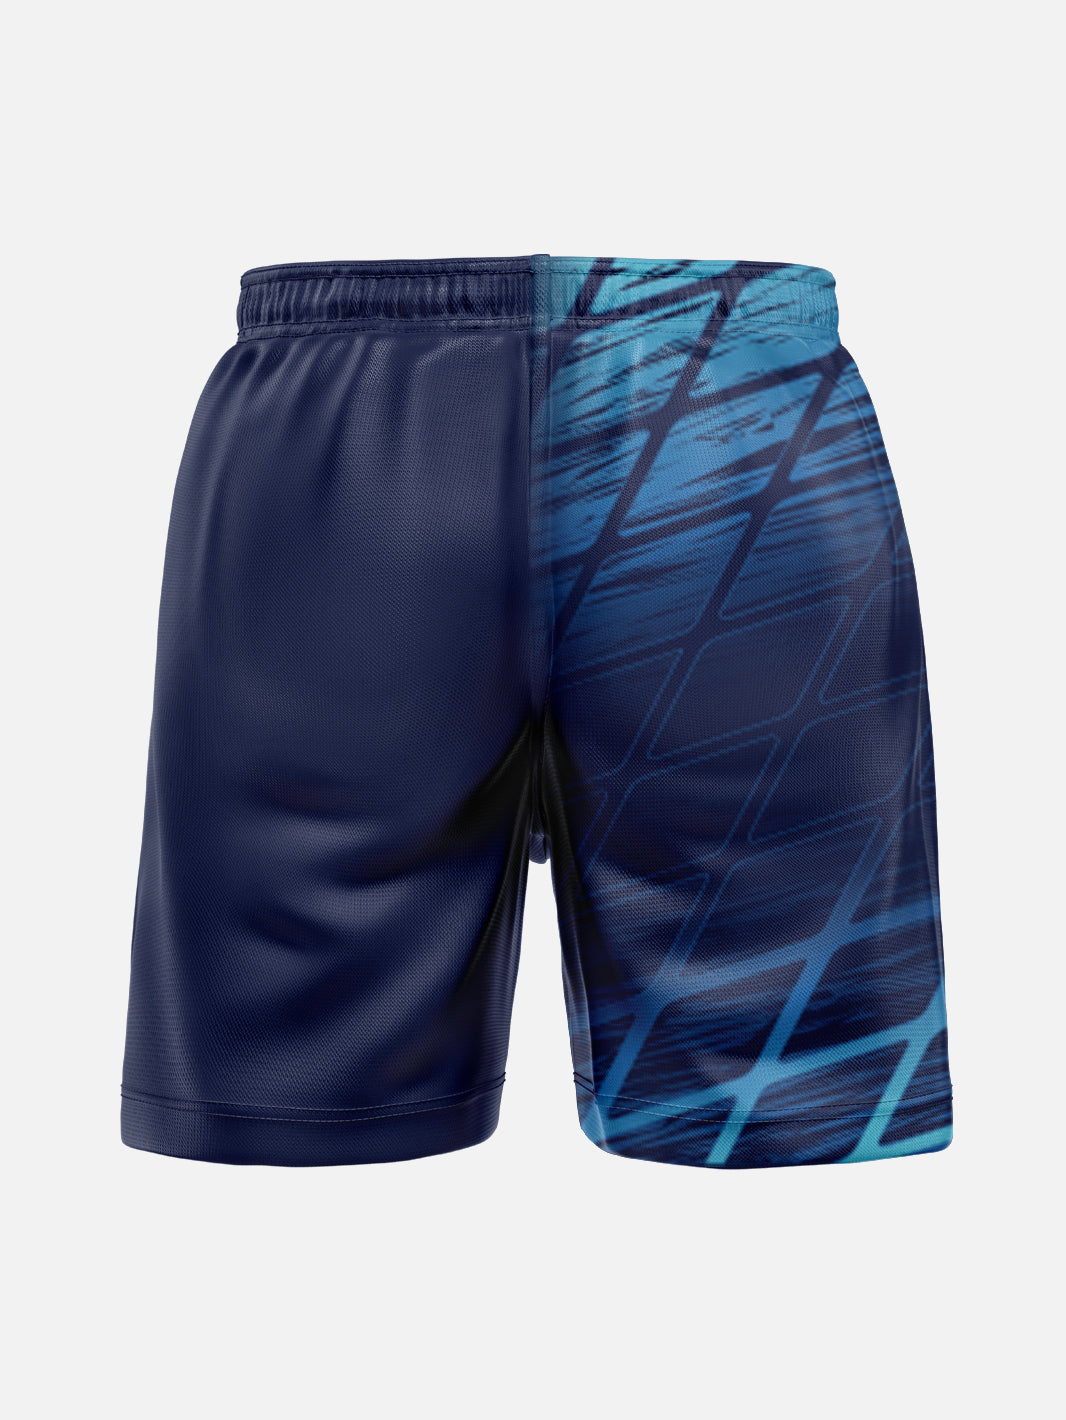 Shorts Custom - Grid